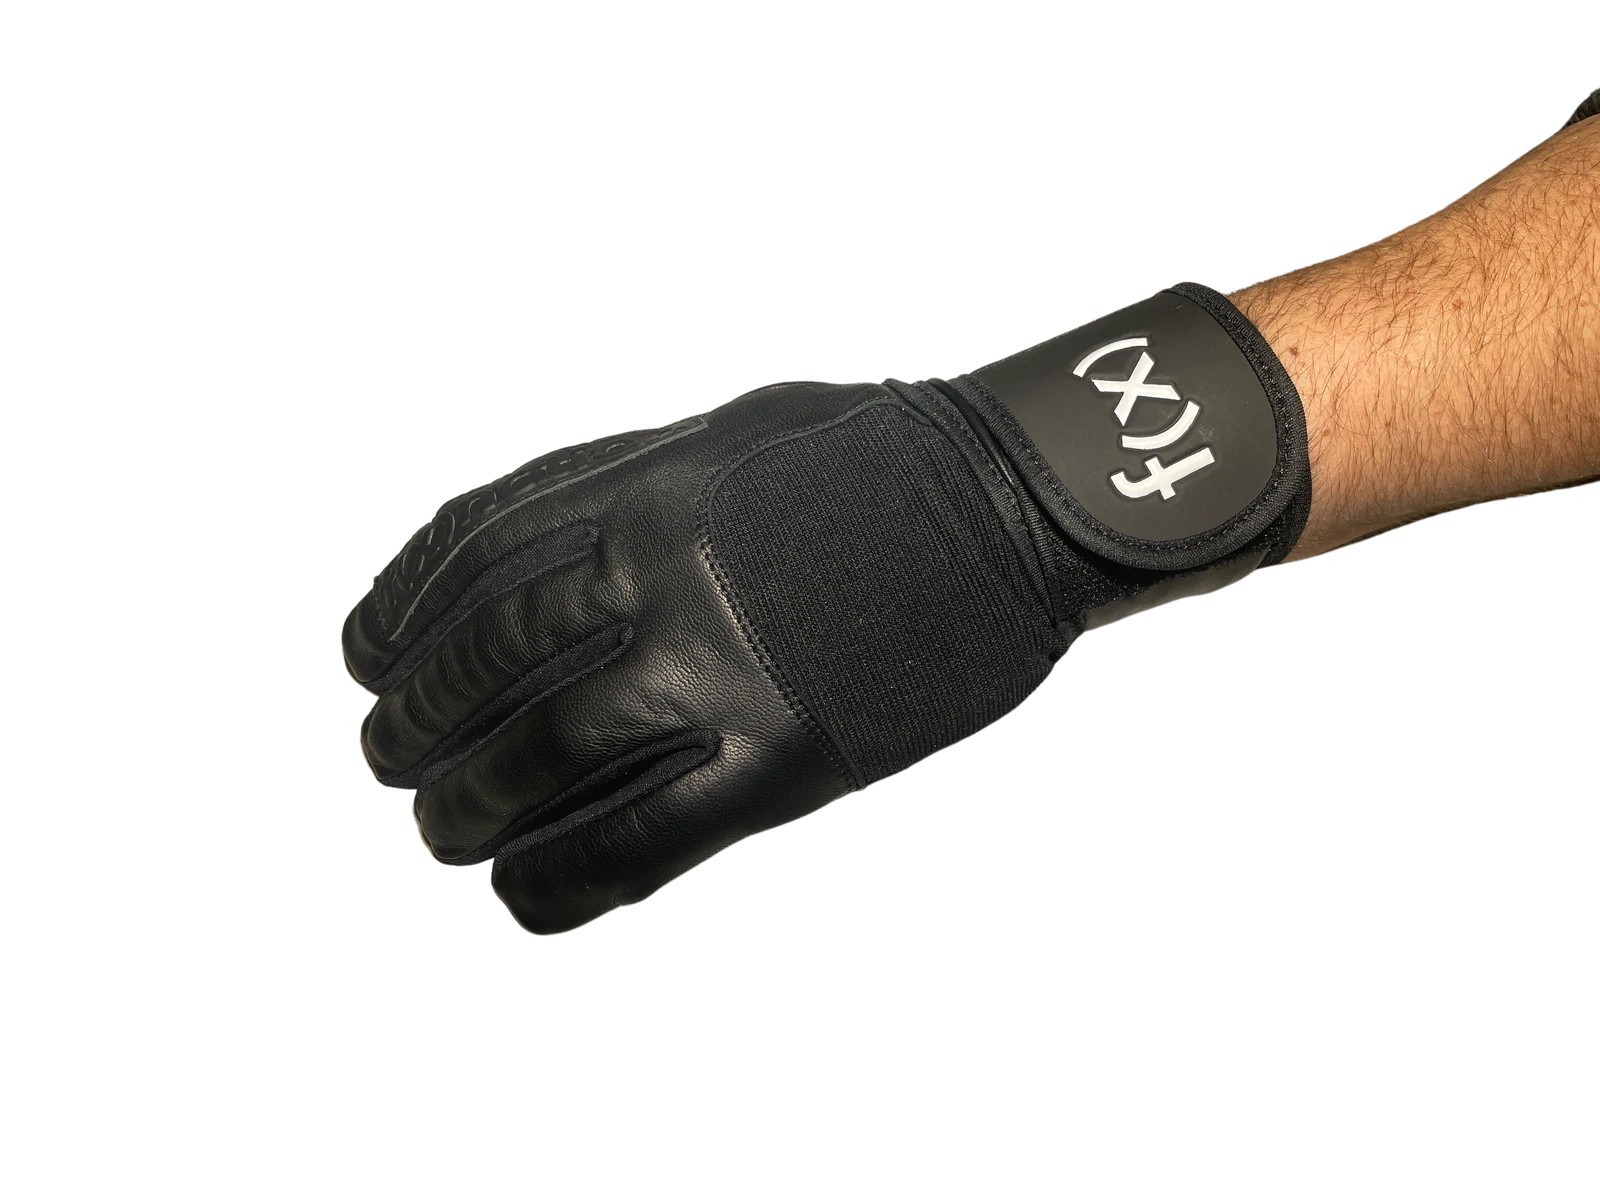 FXNCTION sender wrist guards - full finger glove